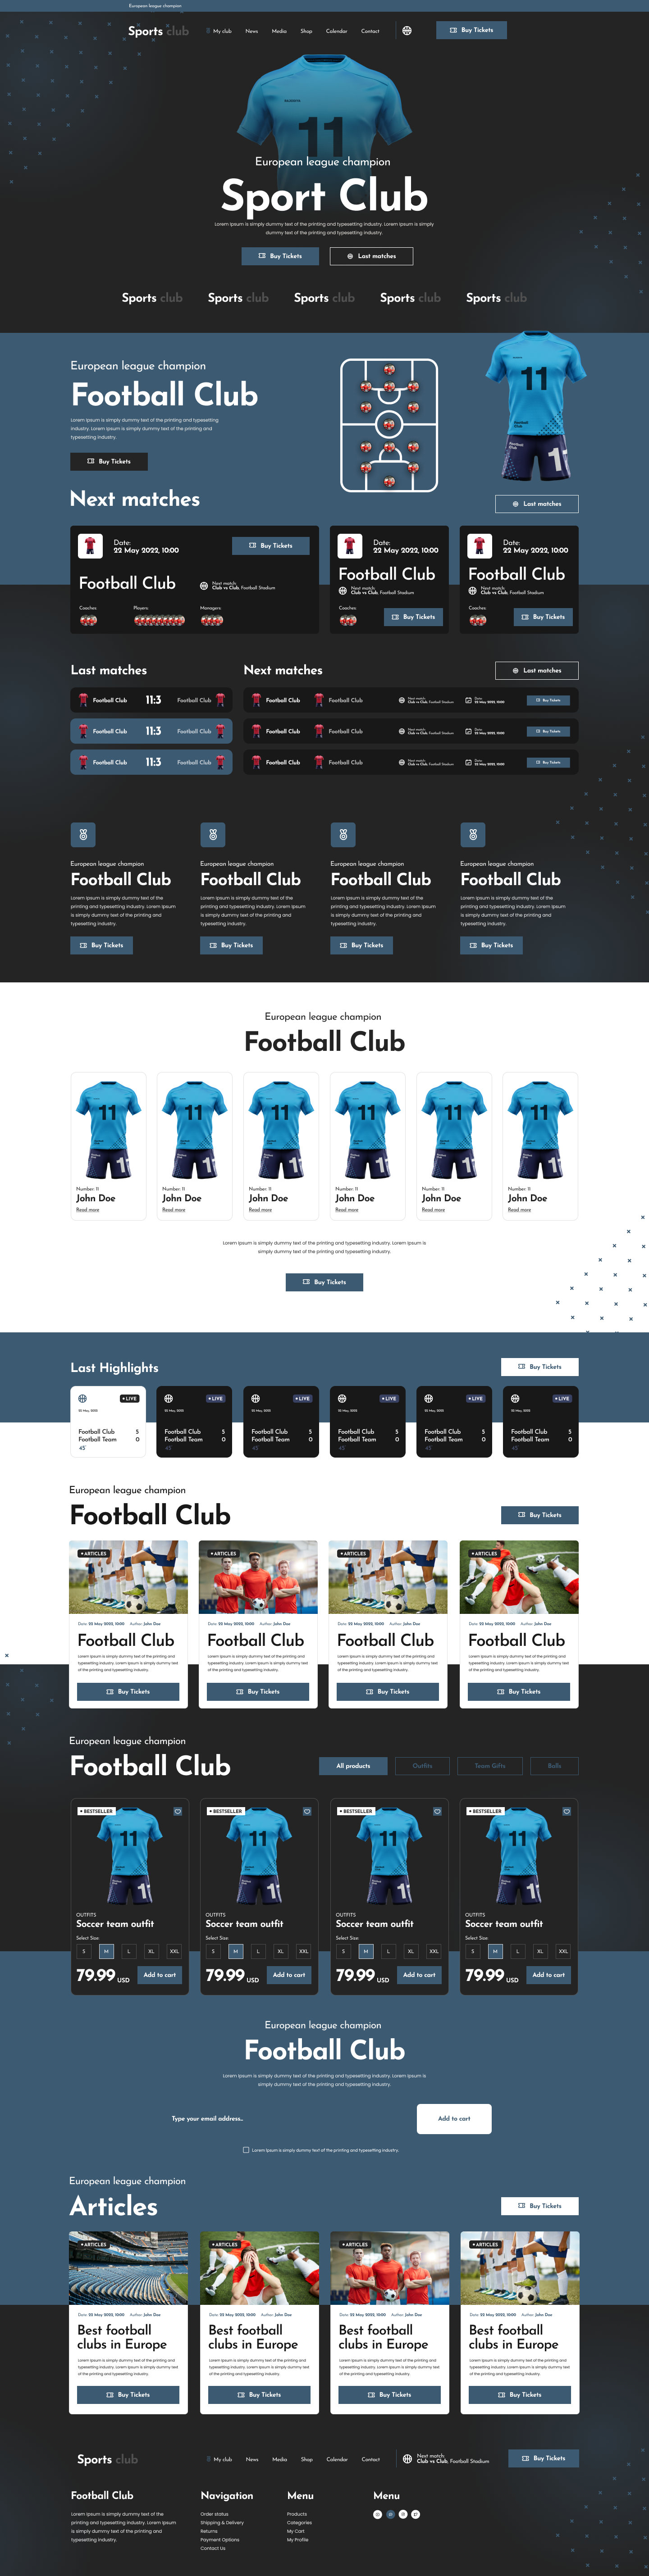 Sports Club WordPress Theme-WorkDo